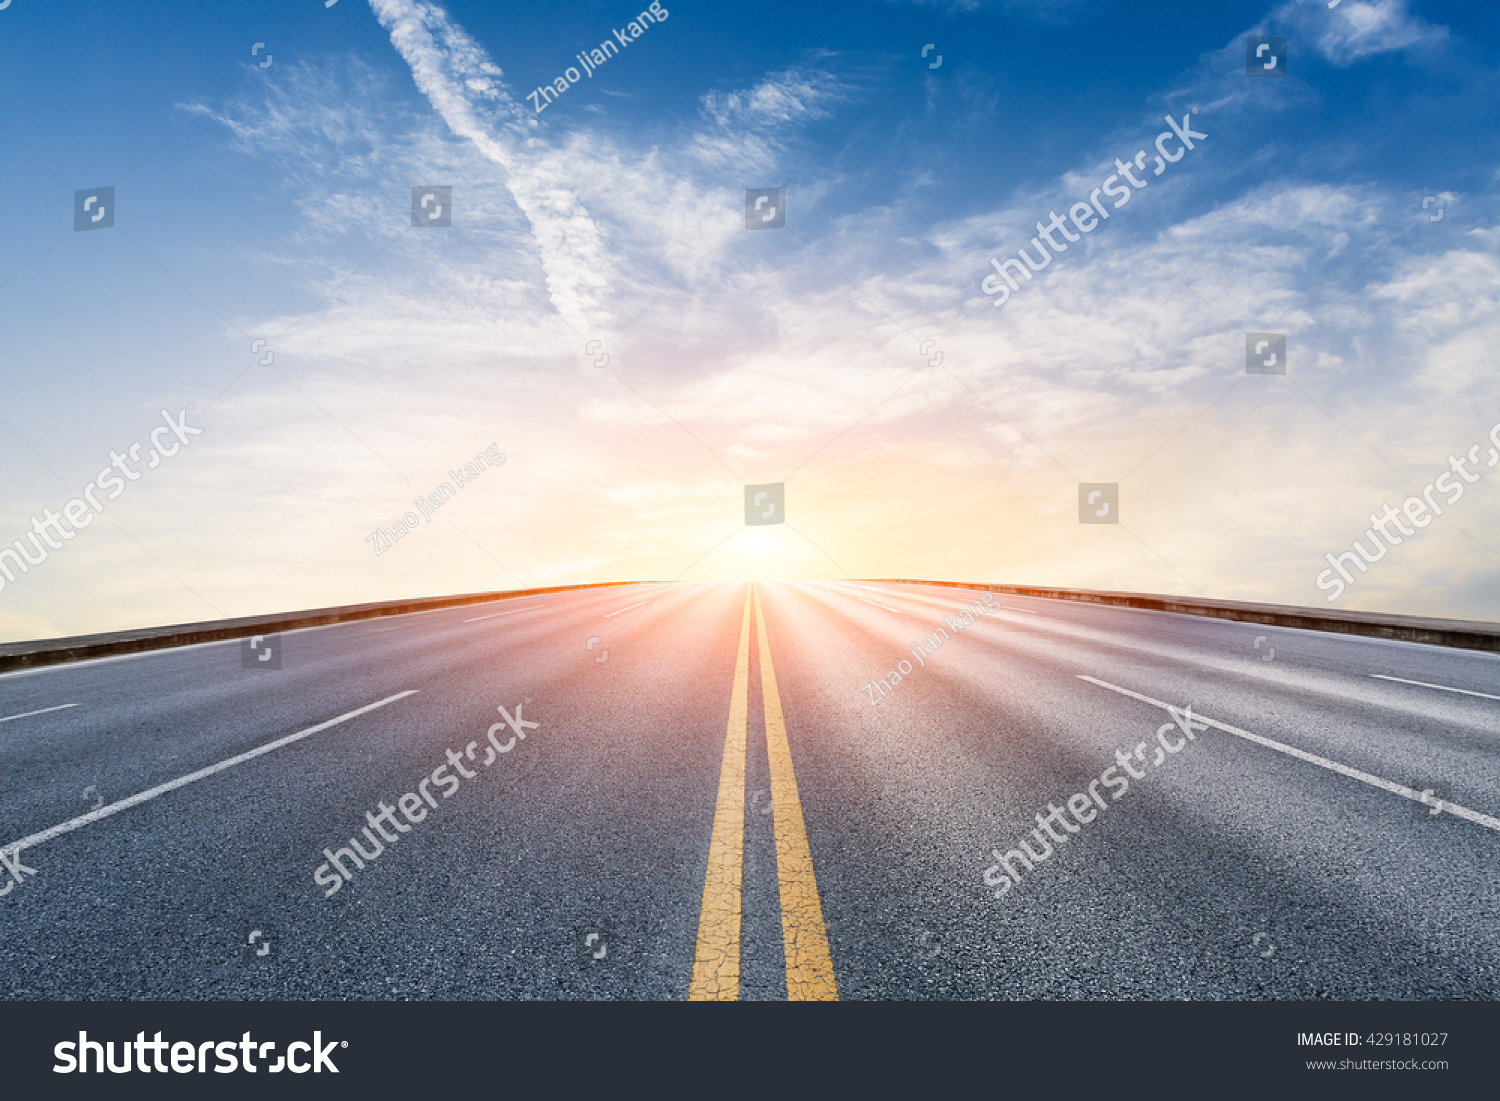 New asphalt highway at sunset scene #429181027